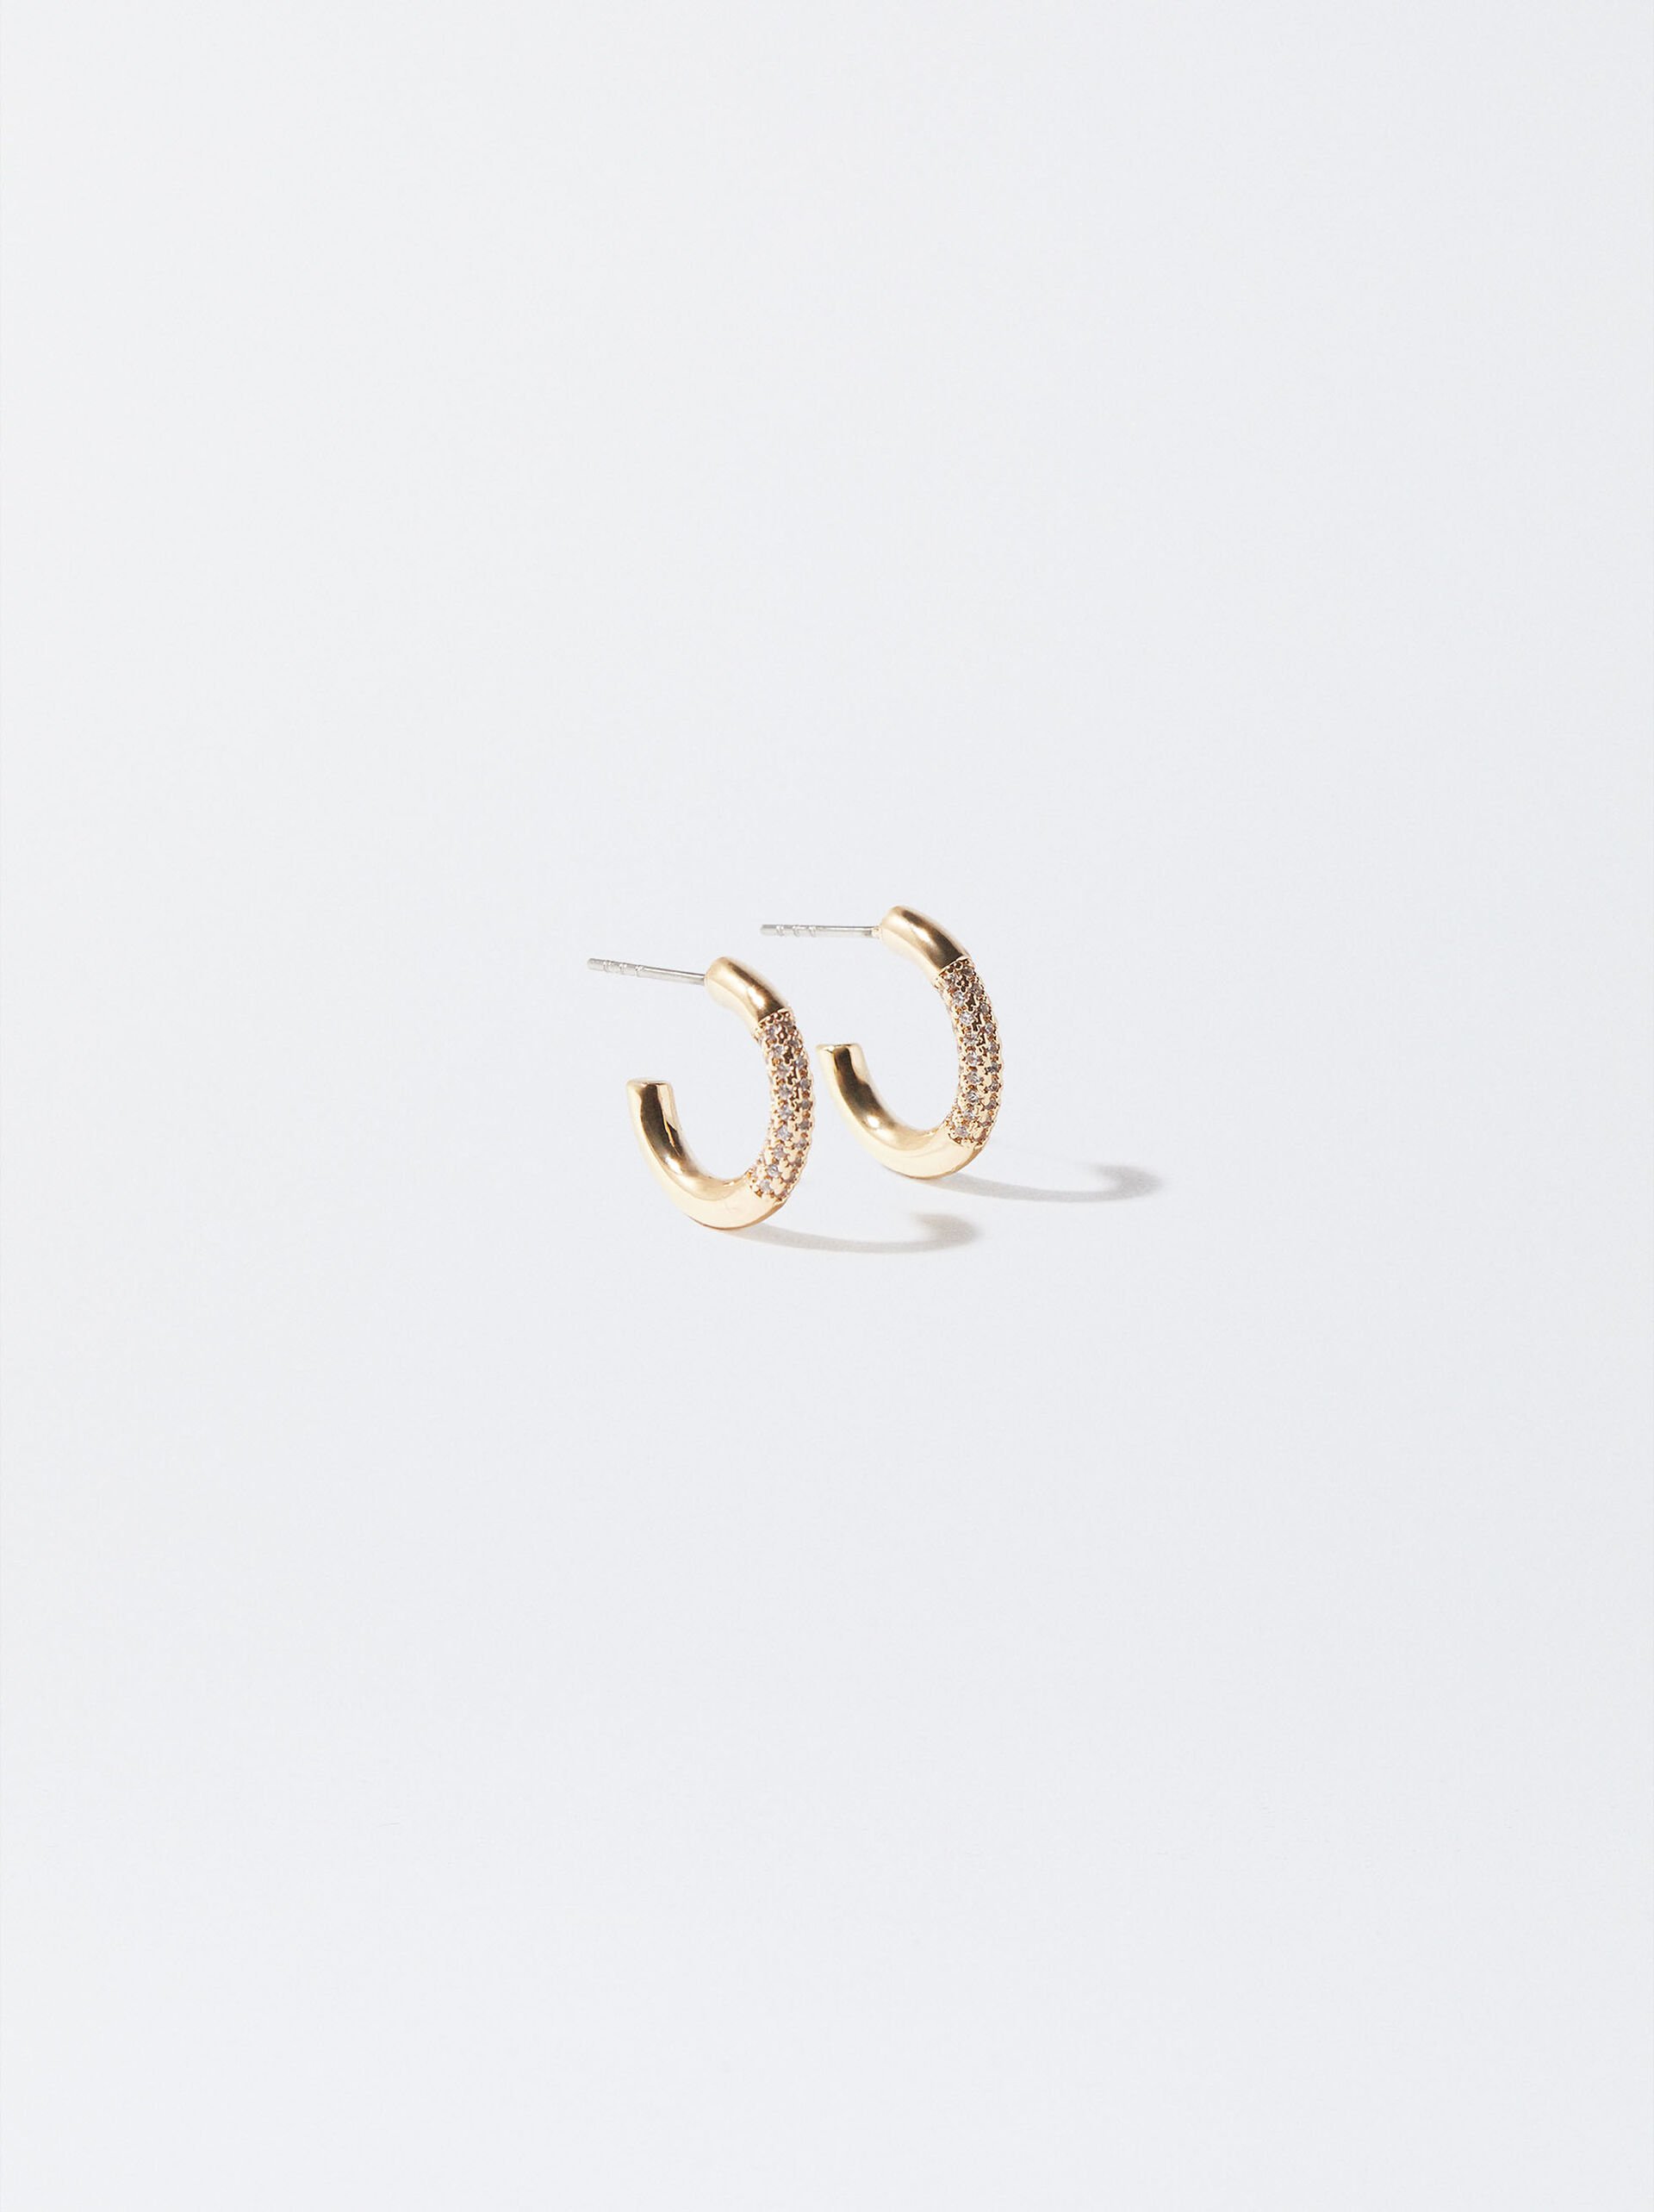 Golden Hoop Earrings With Zircons image number 0.0